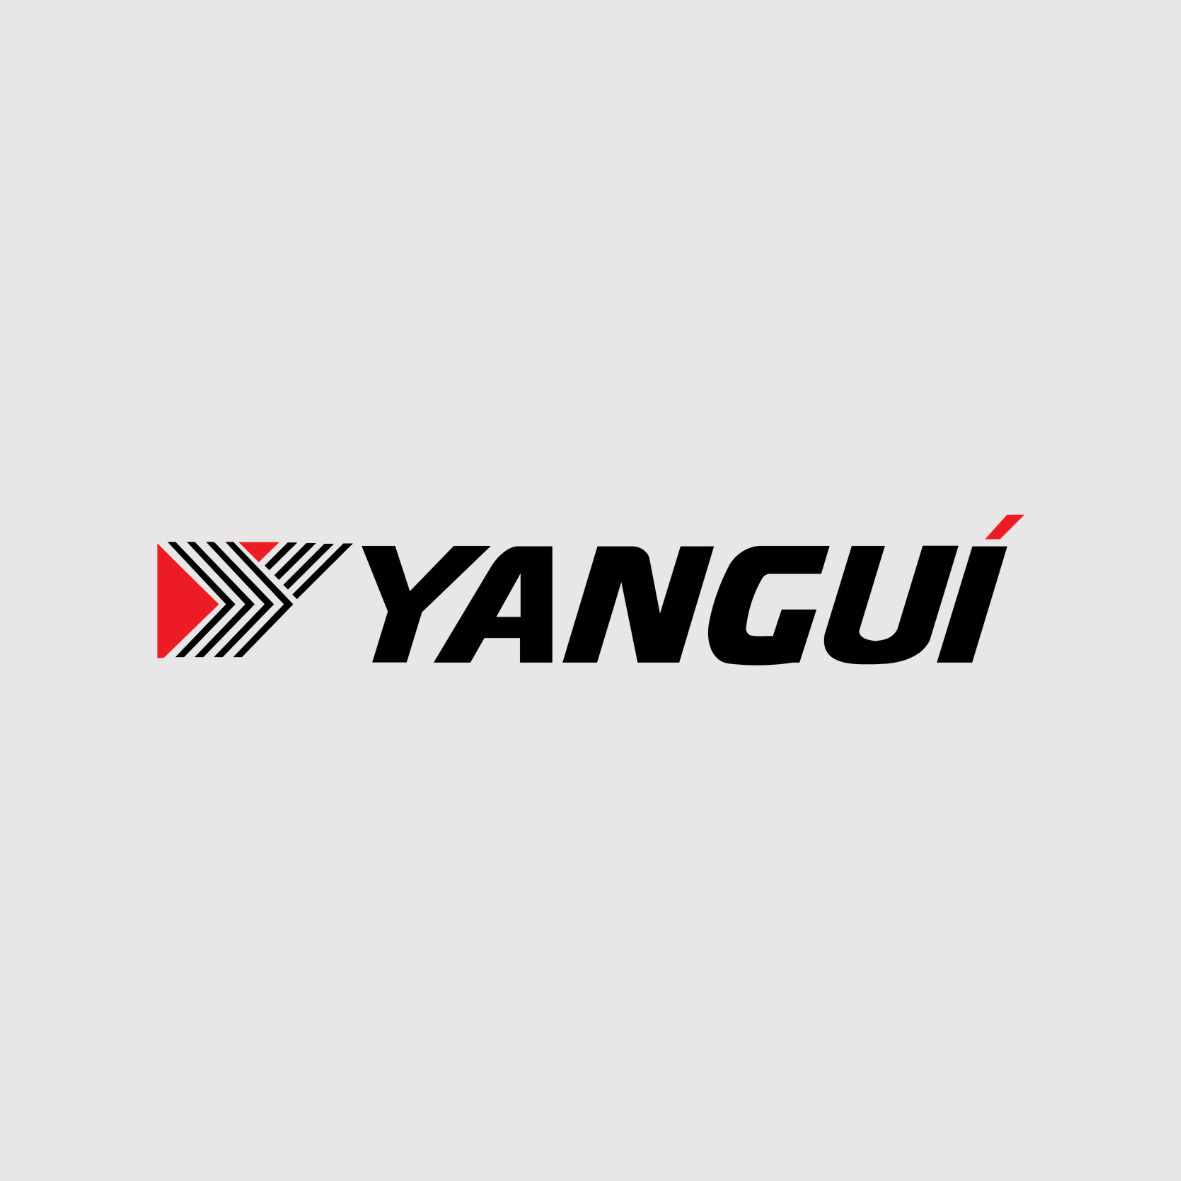 Yanguí